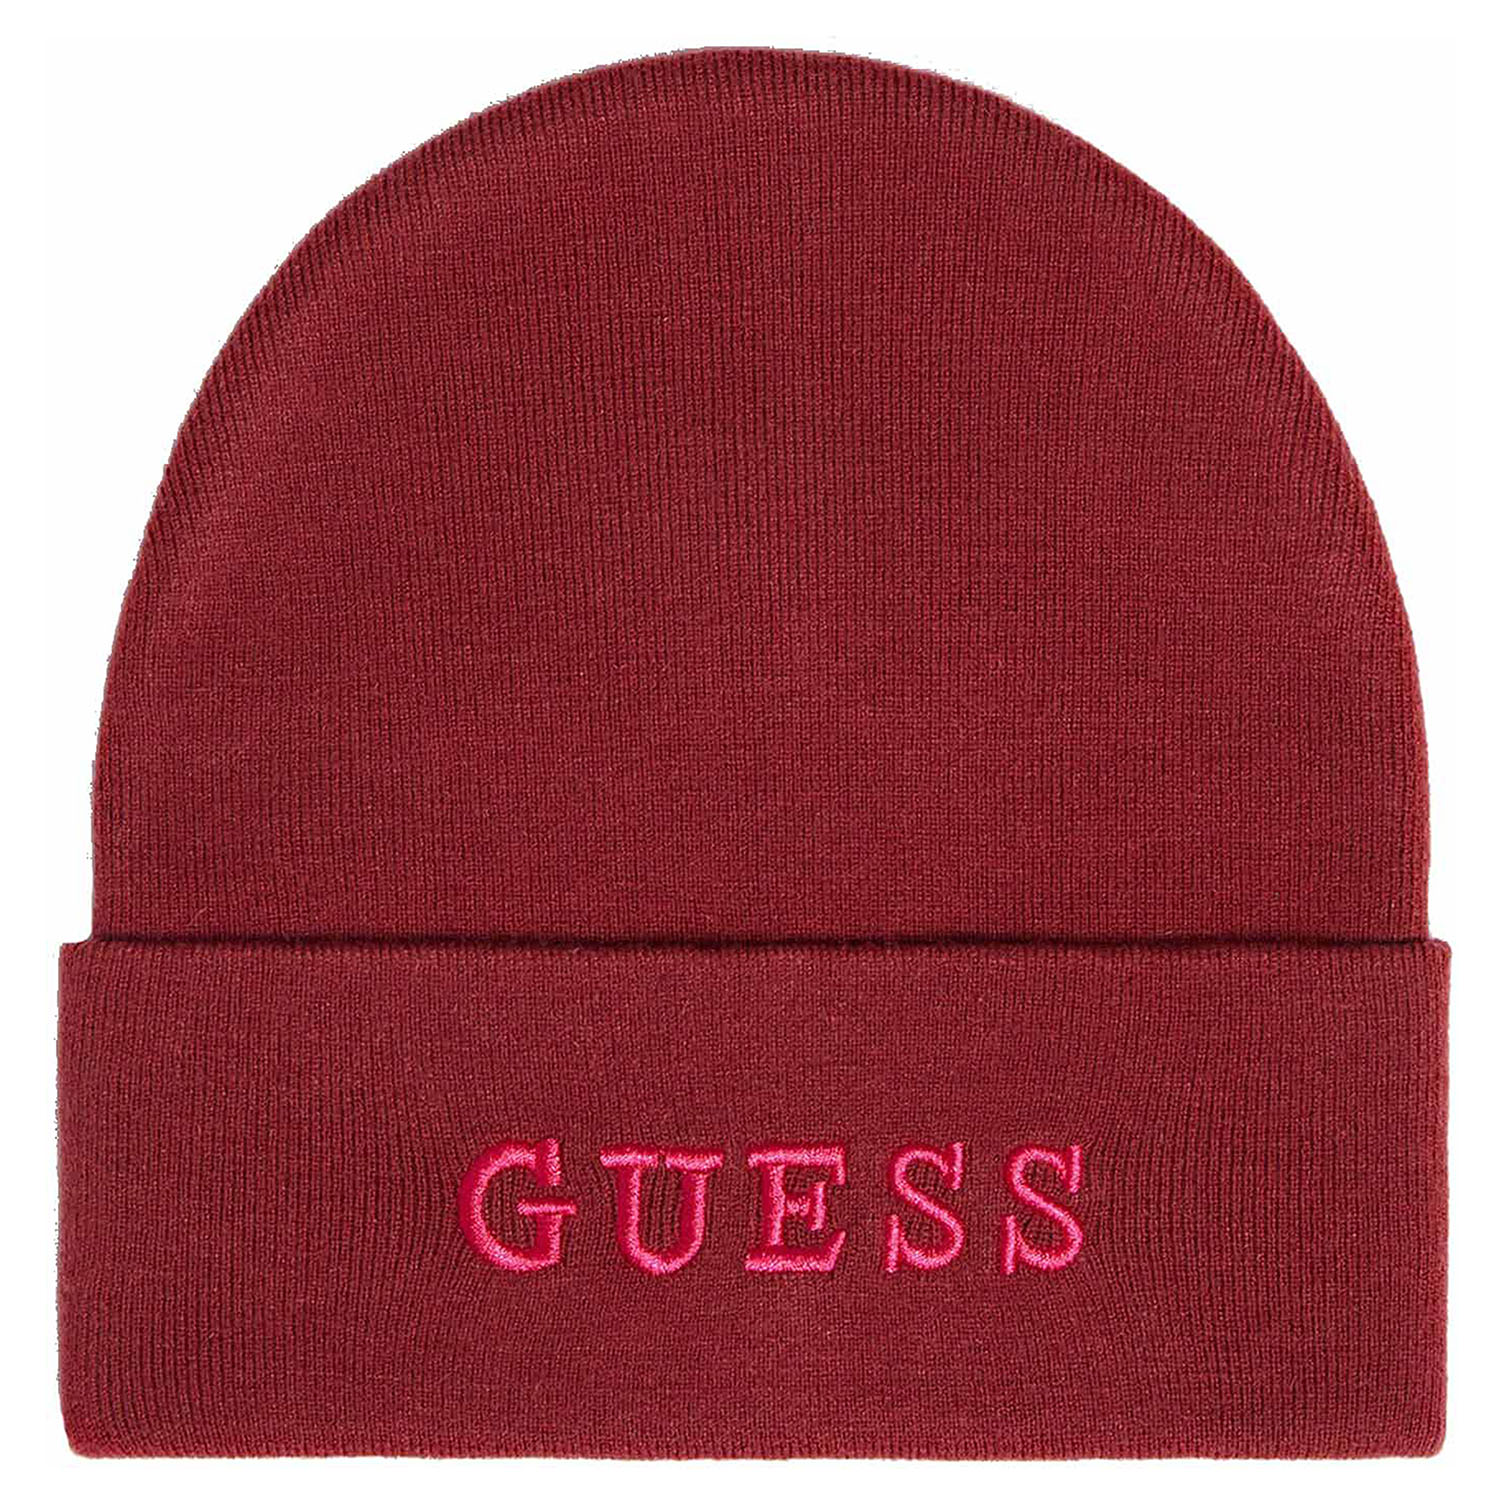 Guess dámská čepice